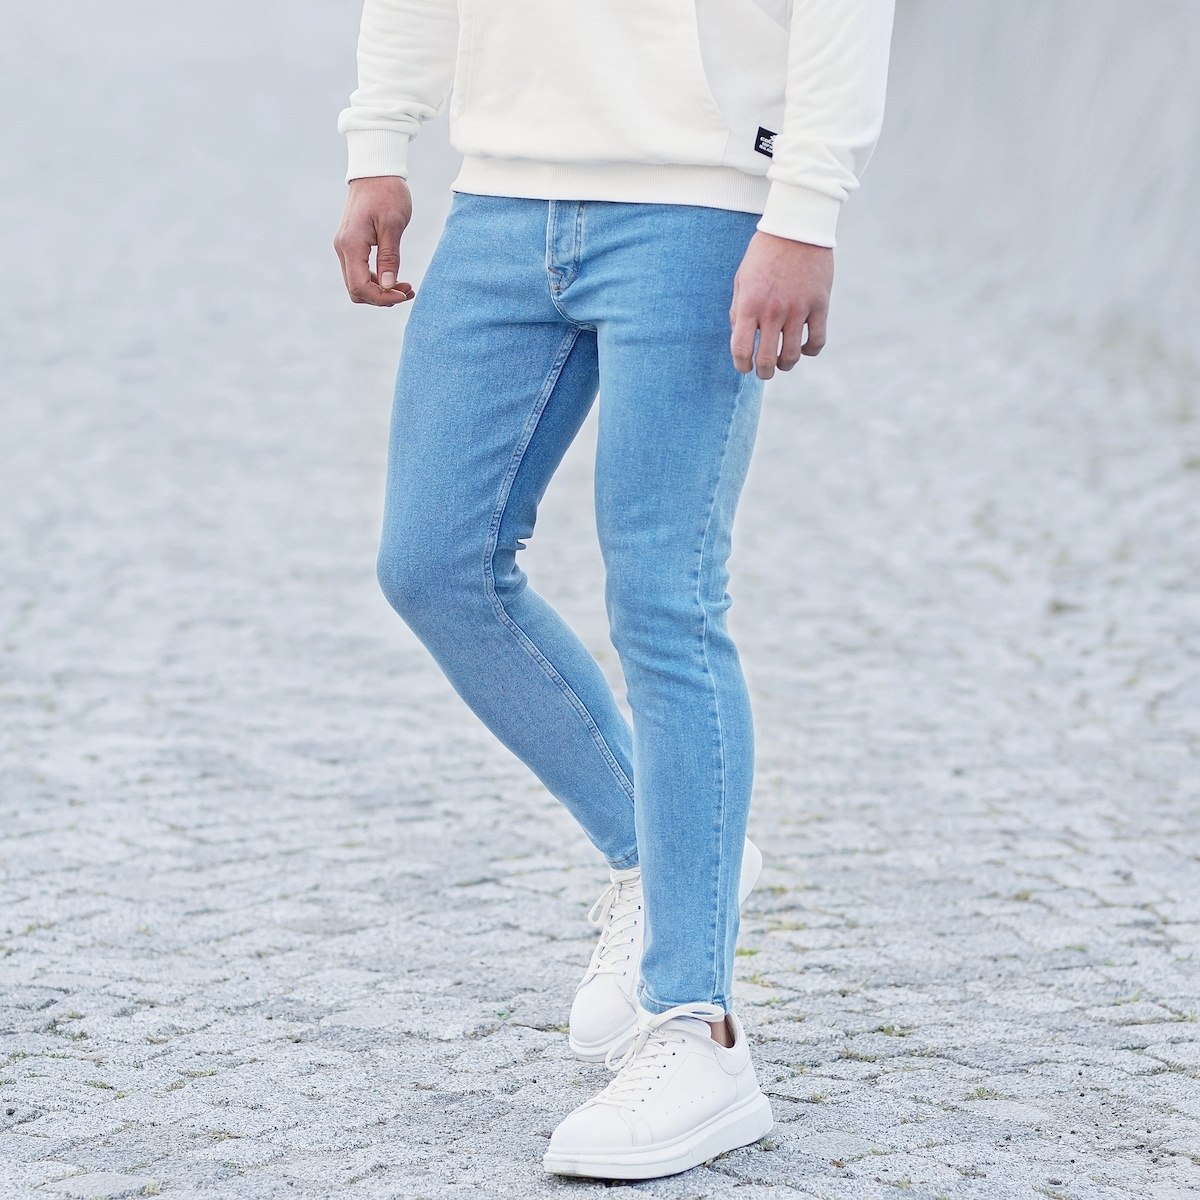 Men's Basic Skinny Jeans In Ice Blue - 3